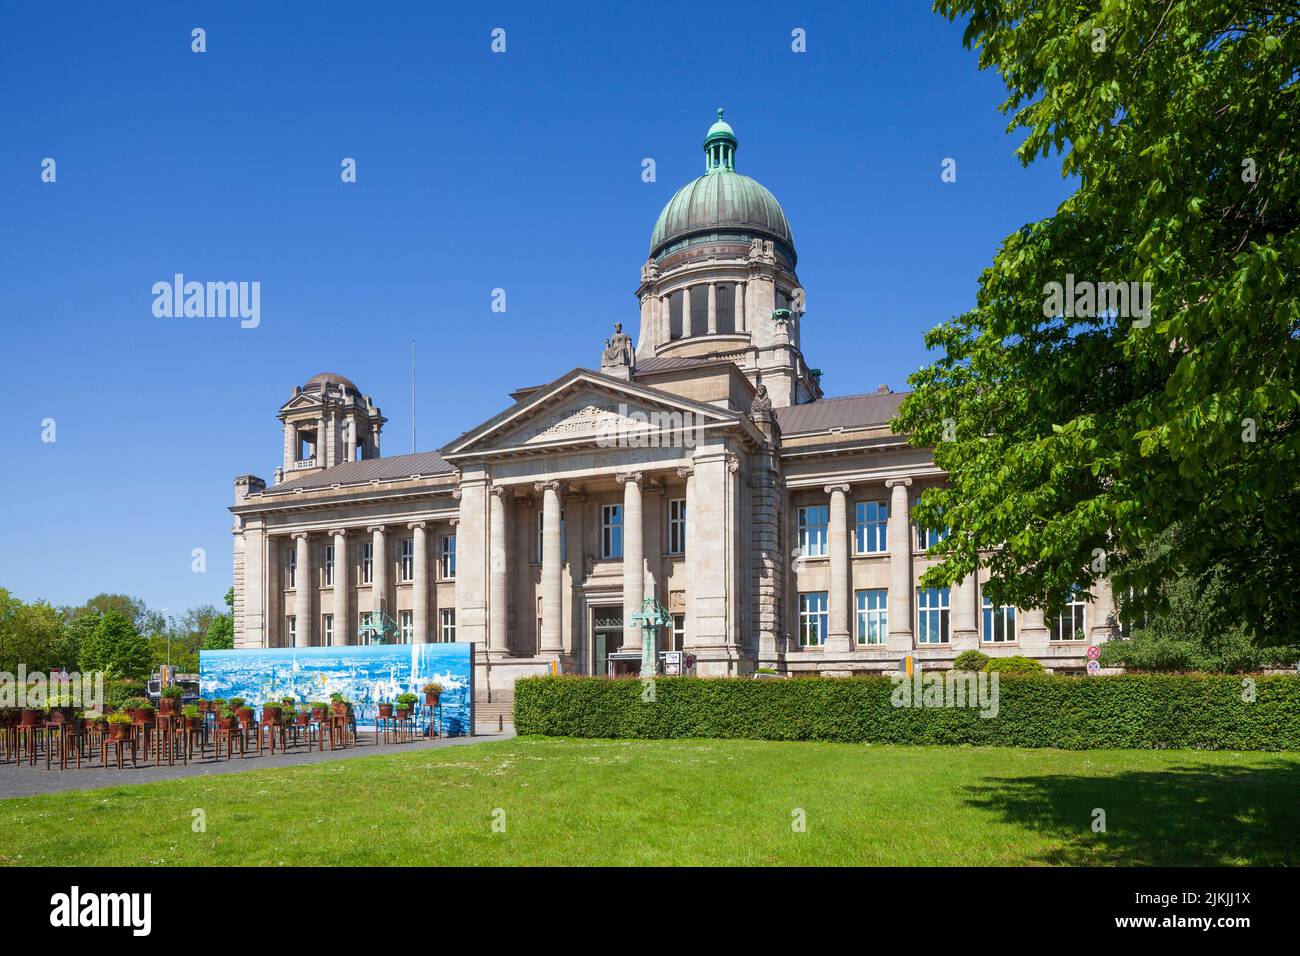 Alemania, Hamburgo, Sievekingplatz con el Tribunal Regional Superior y Memorial 'aquí y ahora' - a las víctimas de la Justicia Nacionalsocialista en Hamburgo Foto de stock